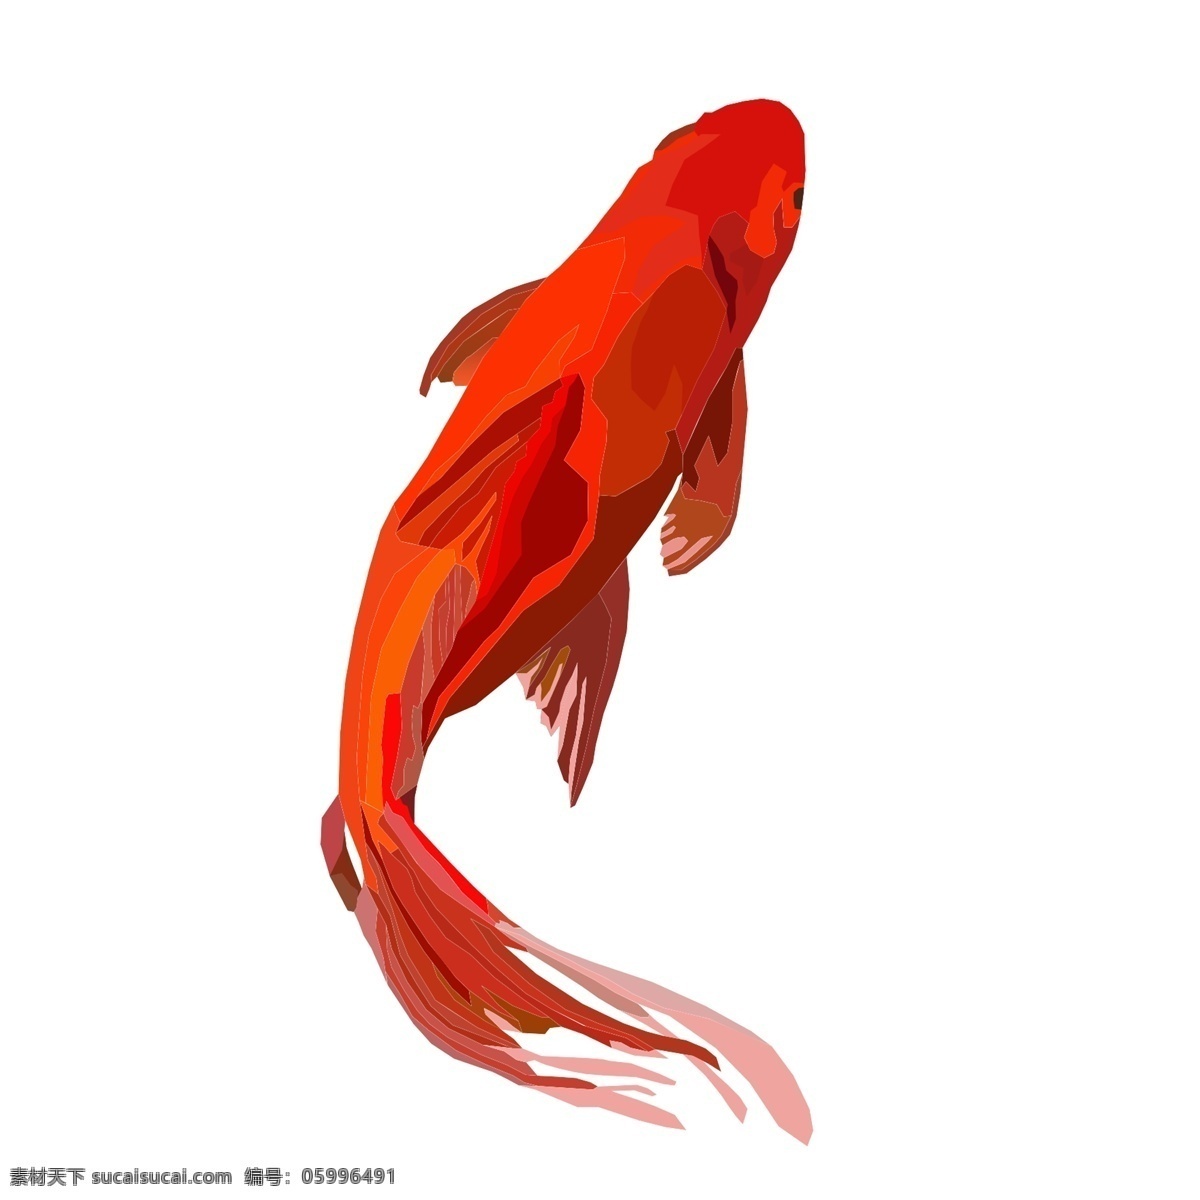 大红色 唯美 鲤鱼 元素 红色鲤鱼 插画元素 卡通元素 透明素材 动物